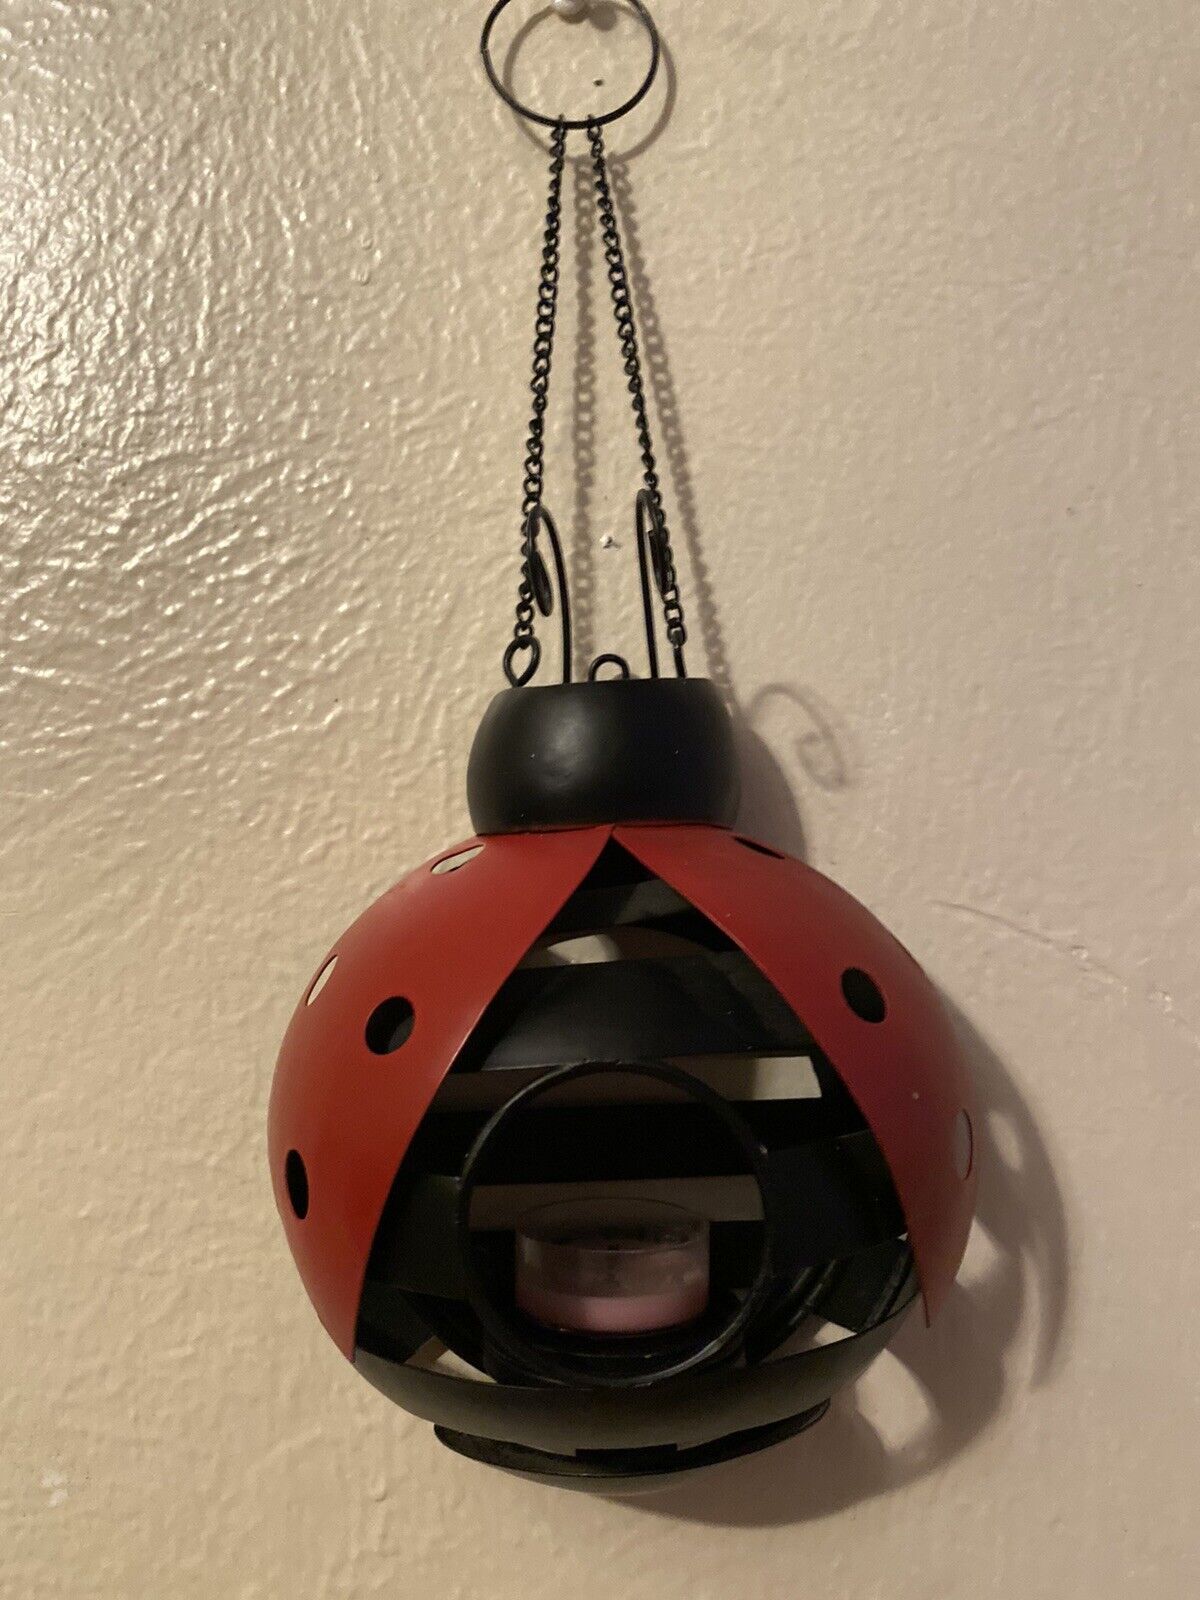 PartyLite Ladybug candle holder hanging